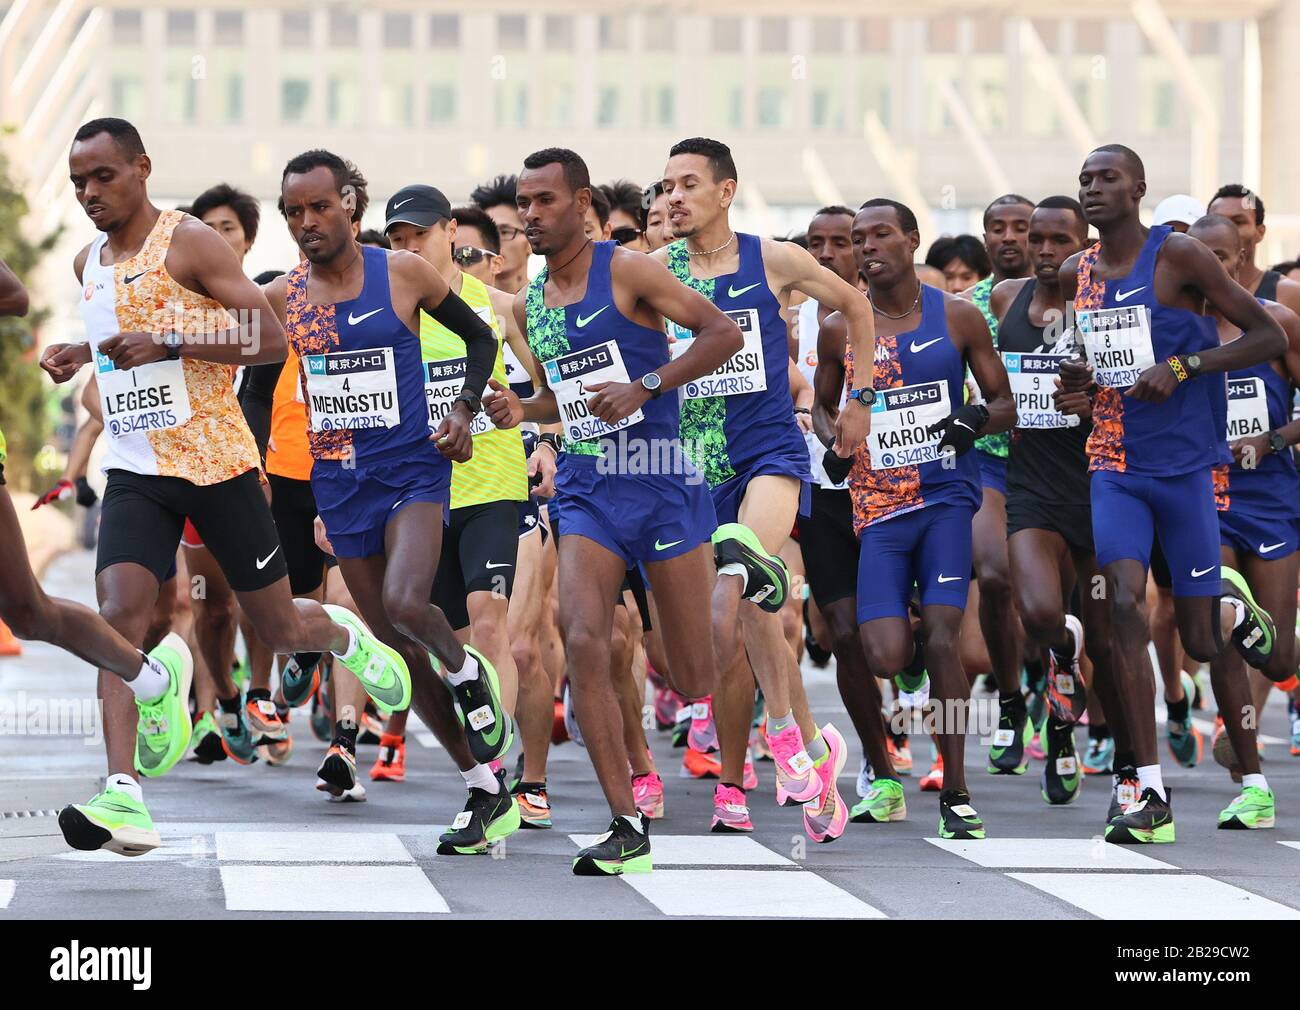 Tokyo, Japon. 1 mars 2020. Le Birhanu Legese (L) d'Ethiopie dirige un pack de coureurs alors qu'ils quittent l'hôtel de ville de Tokyo pour le marathon de Tokyo le dimanche 1er mars 2020. Legese a remporté la course pour la deuxième année consécutive avec une durée de 2 heures 4 minutes 15 secondes. Crédit: Yoshio Tsunoda/Aflo/Alay Live News Banque D'Images